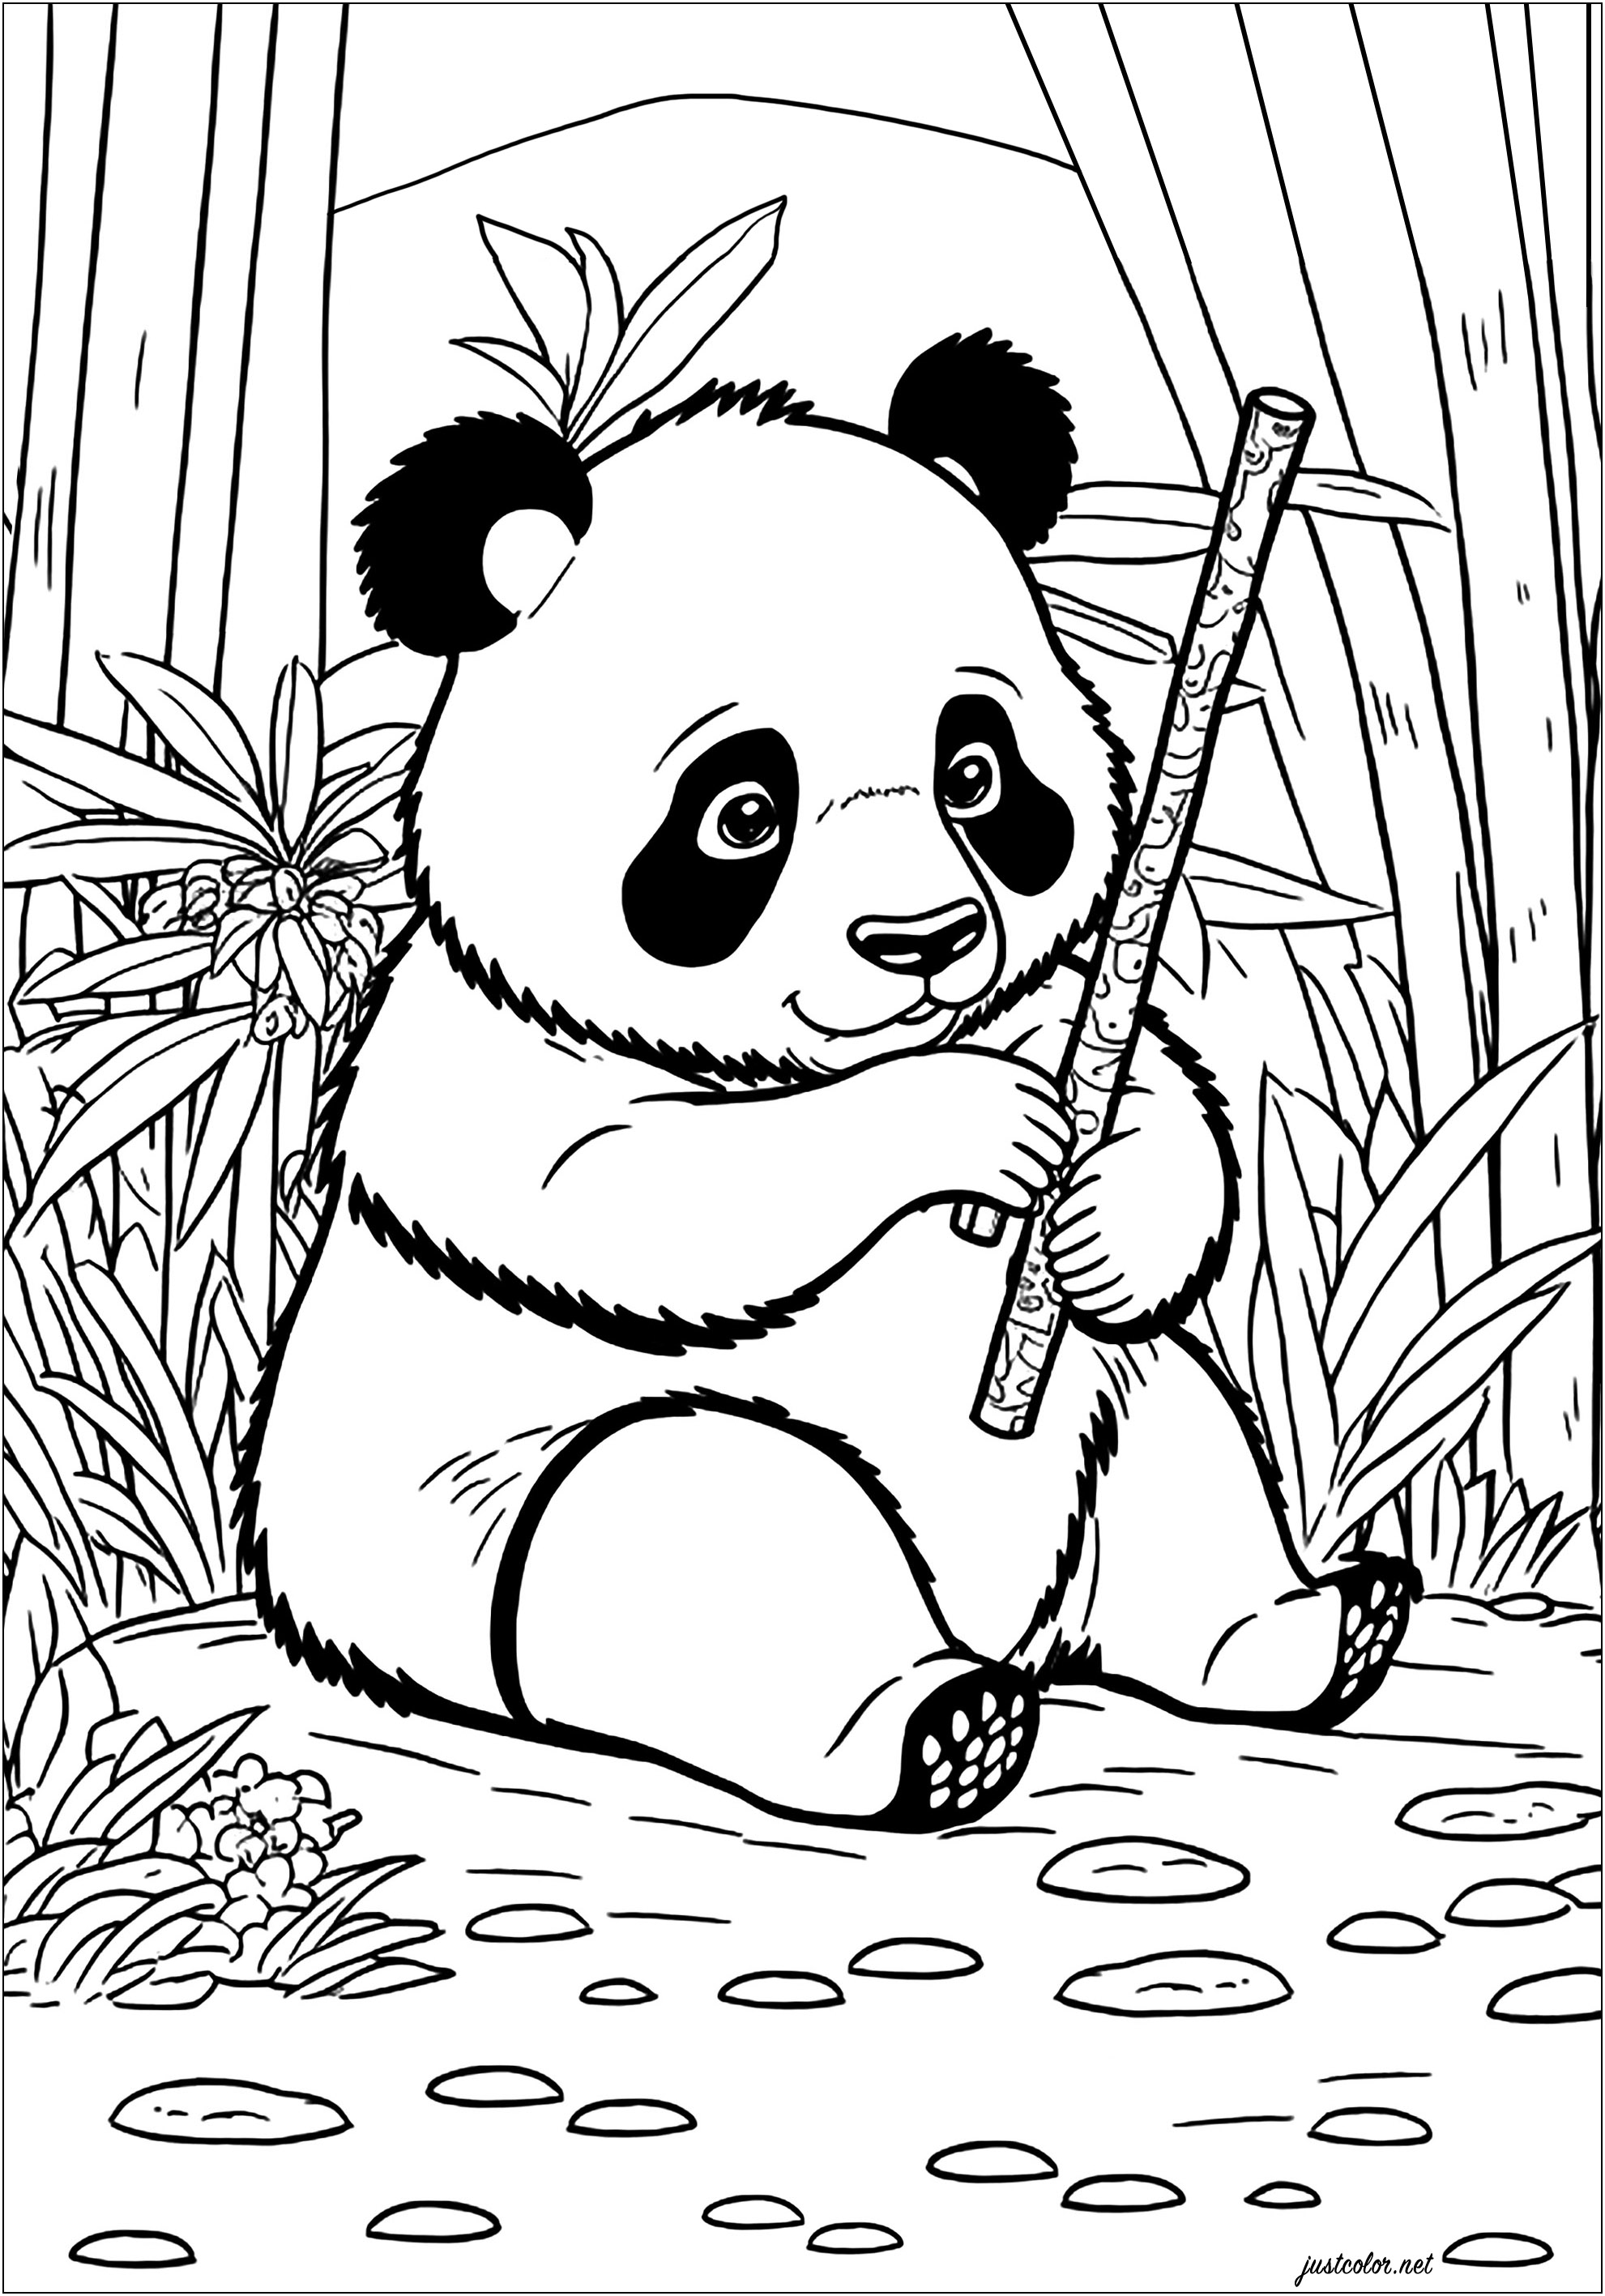 Jeune Panda mangeant du bambou. Ce Panda aux joues rondes et à l'expression amusante est assis dans une forêt luxuriante remplie d'arbres de bambou hauts. Il mange joyeusement un tige de bambou, il a l'air d'avoir très faim !